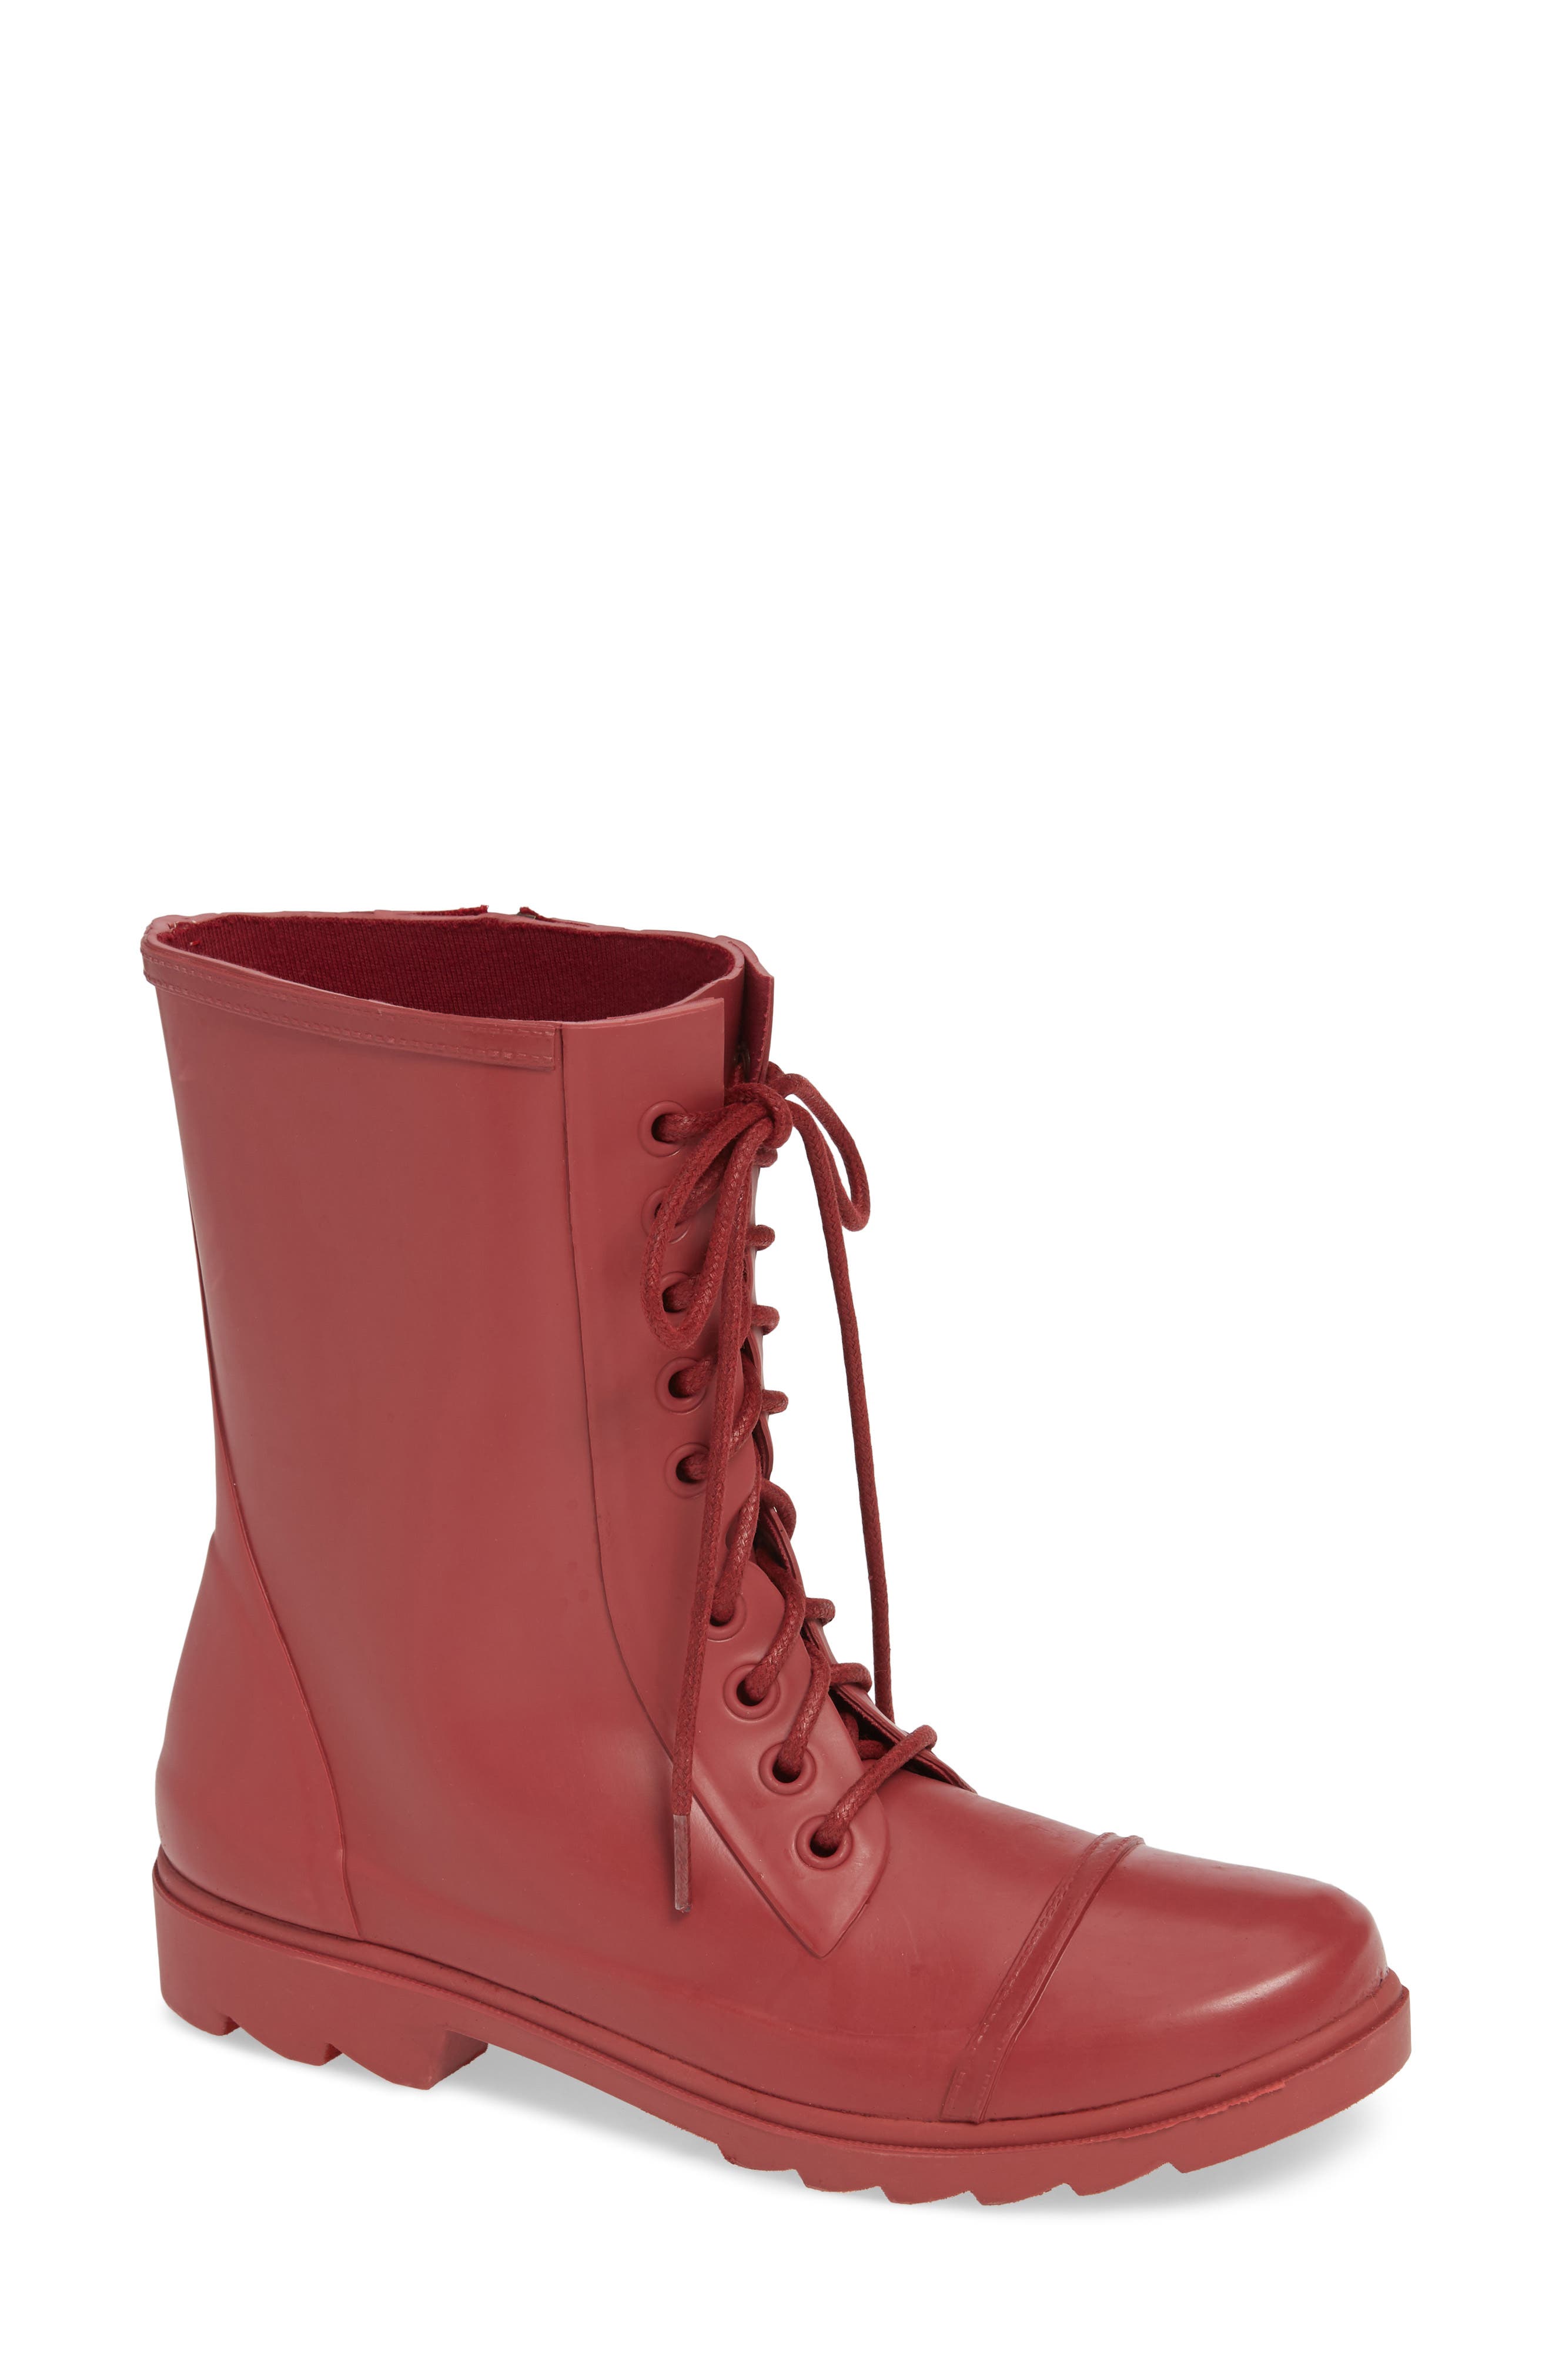 steve madden rain boots red zipper